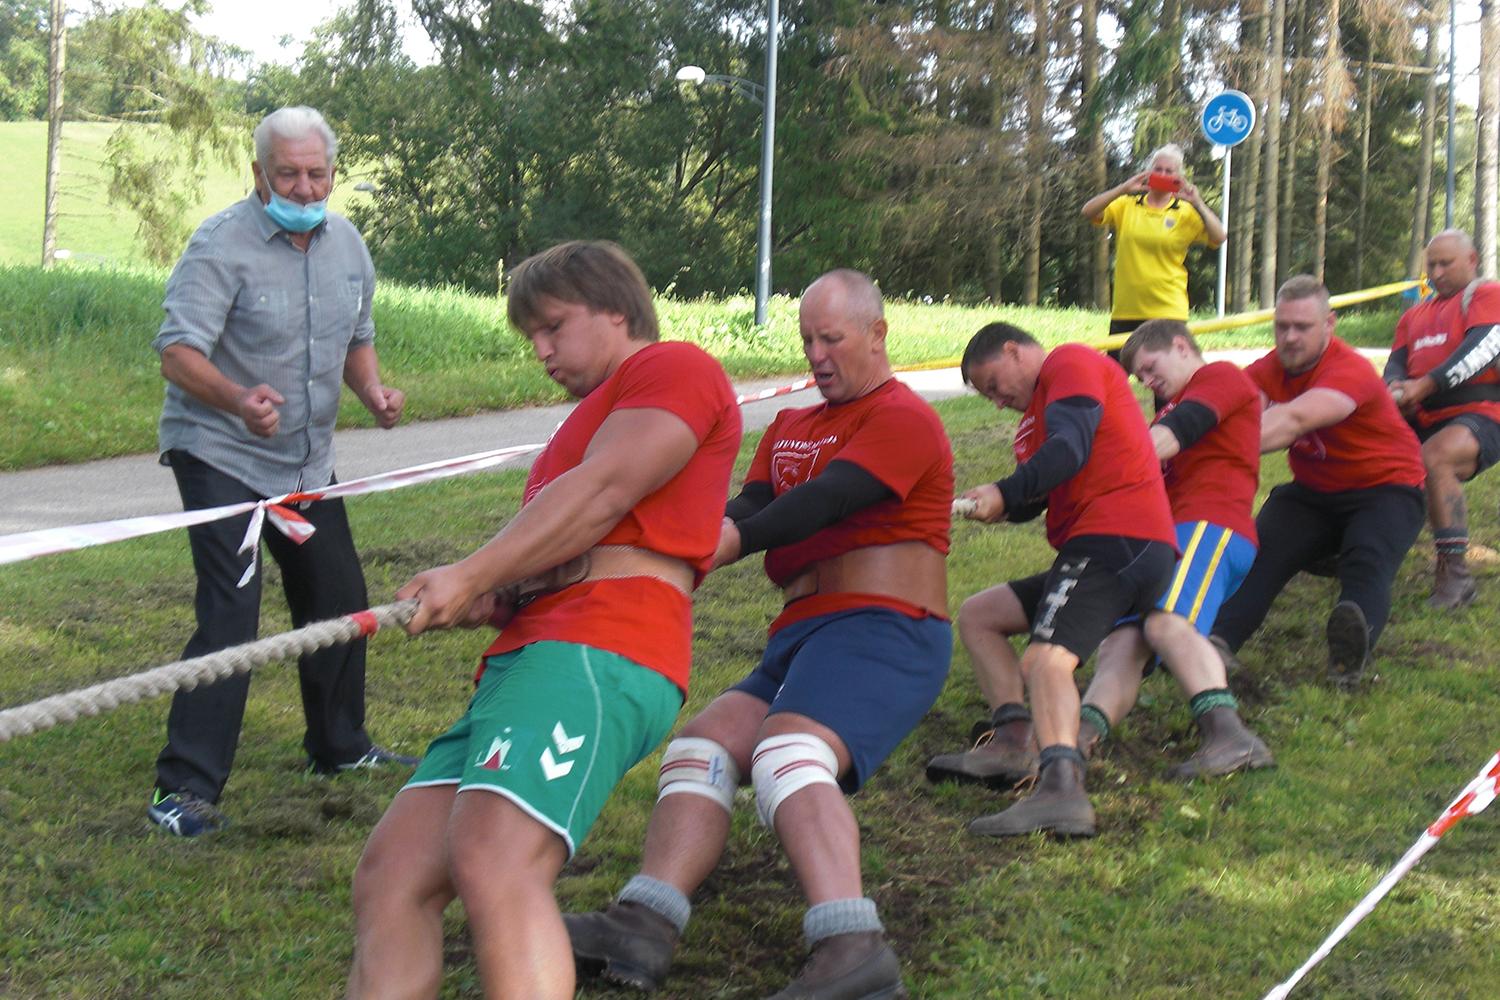 Dalyvavo seniūnijų zoninėse varžybose / Virvės traukime puikiai pasirodė mūsų rajono vyrai.